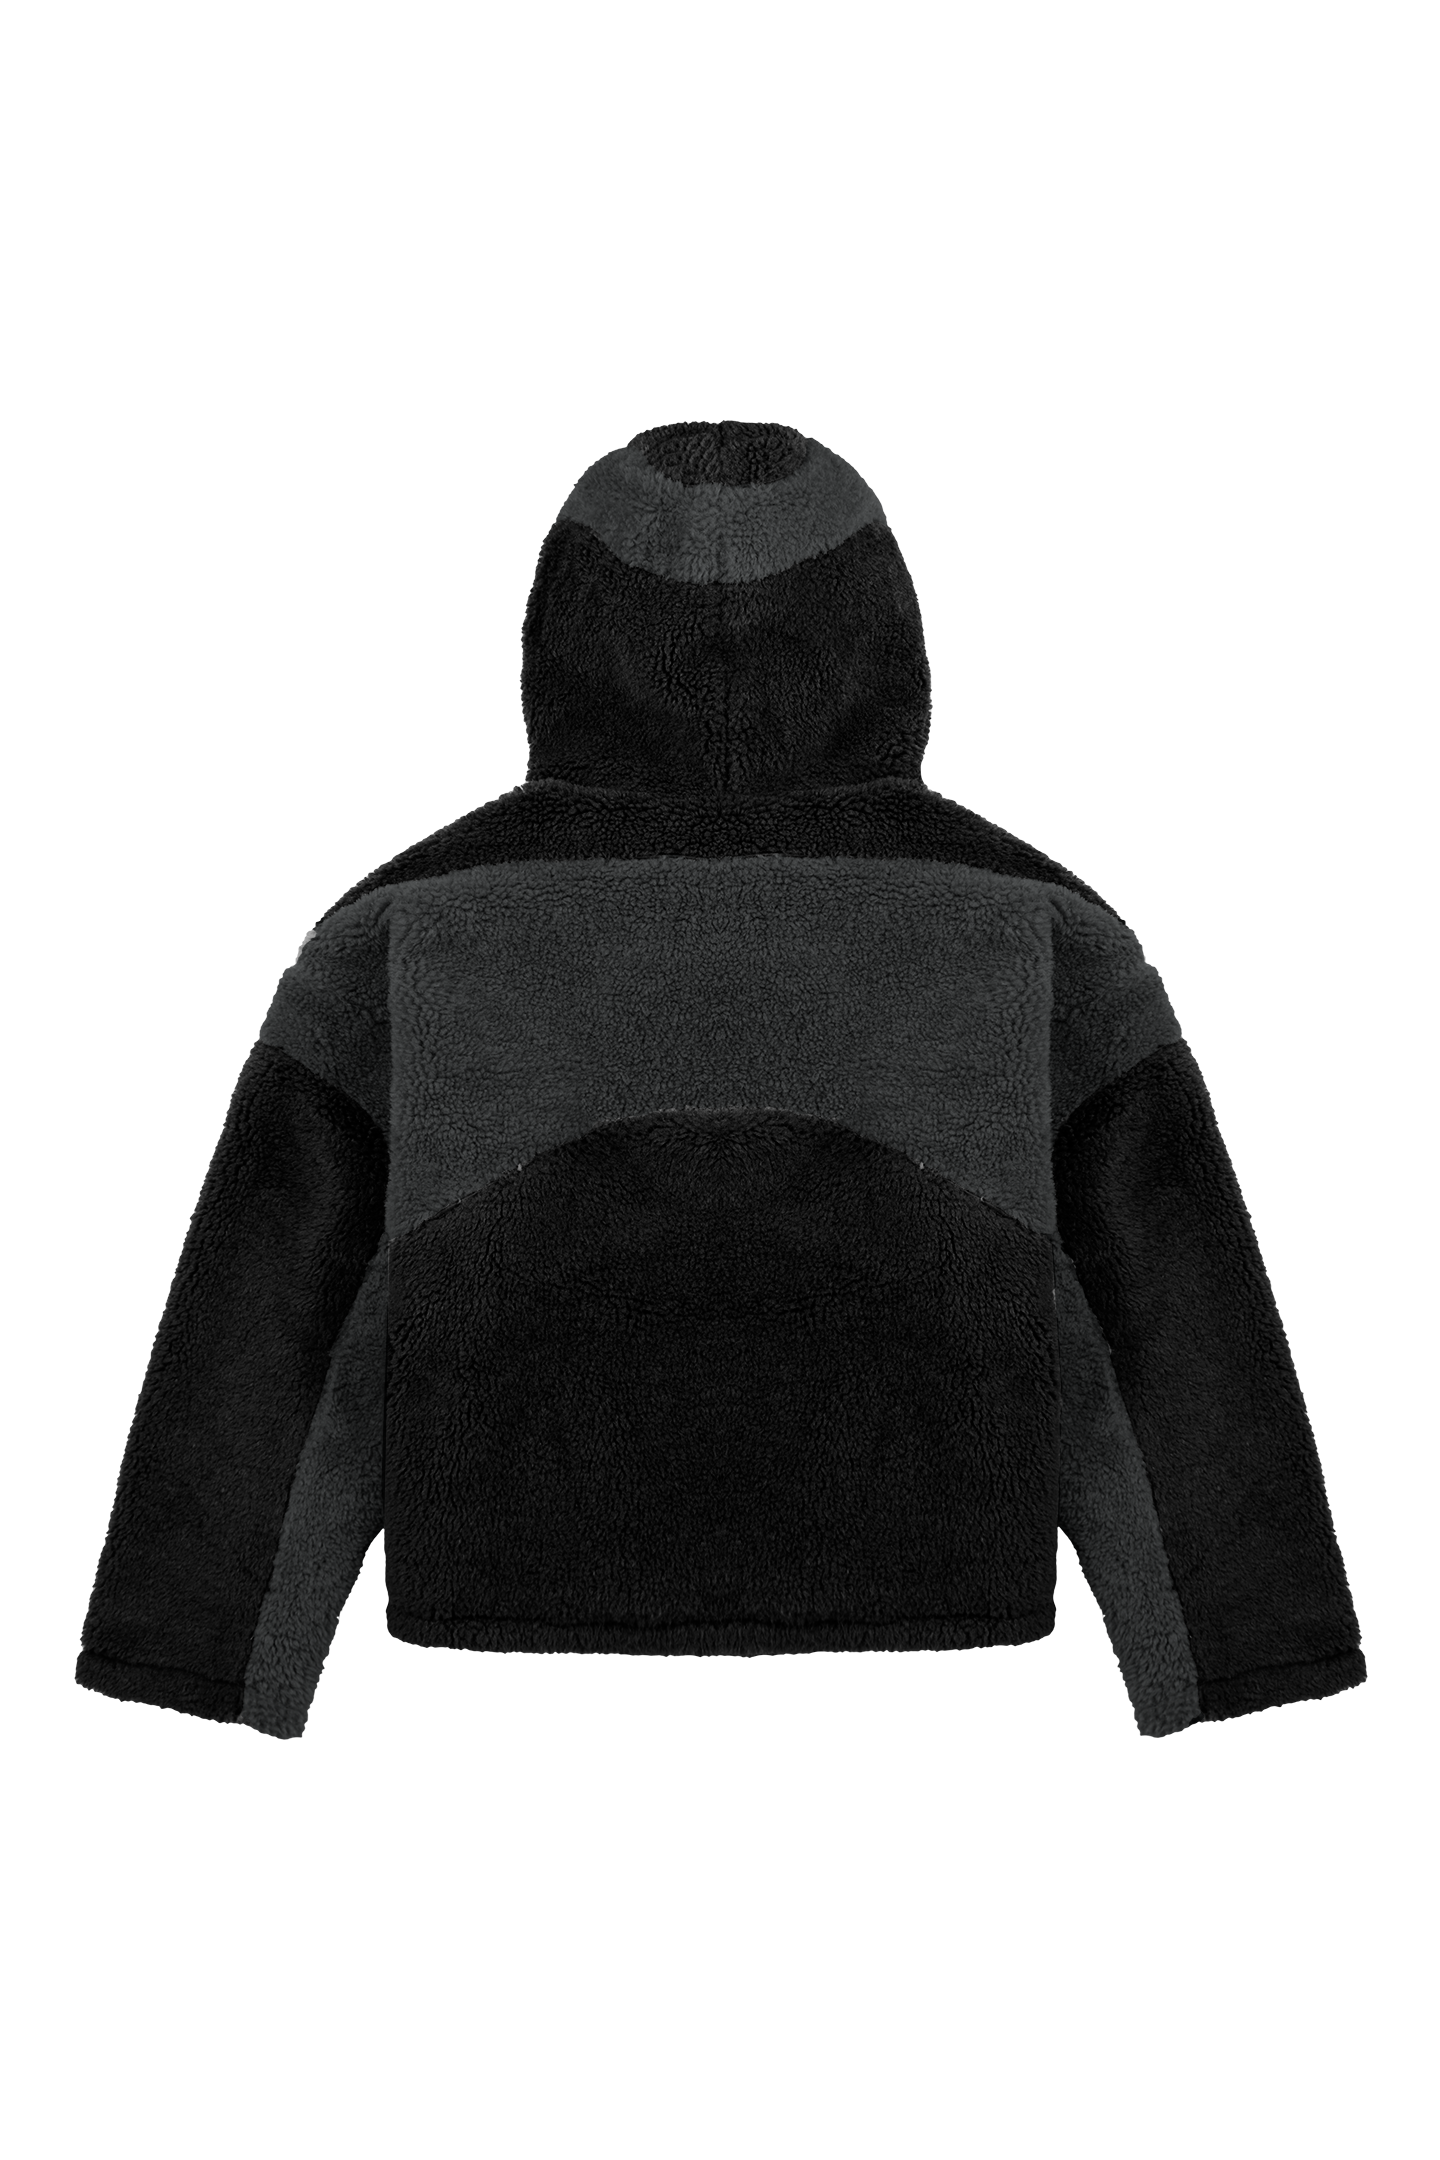 Black Fleece Jacket 2.0 – Trendt Vision